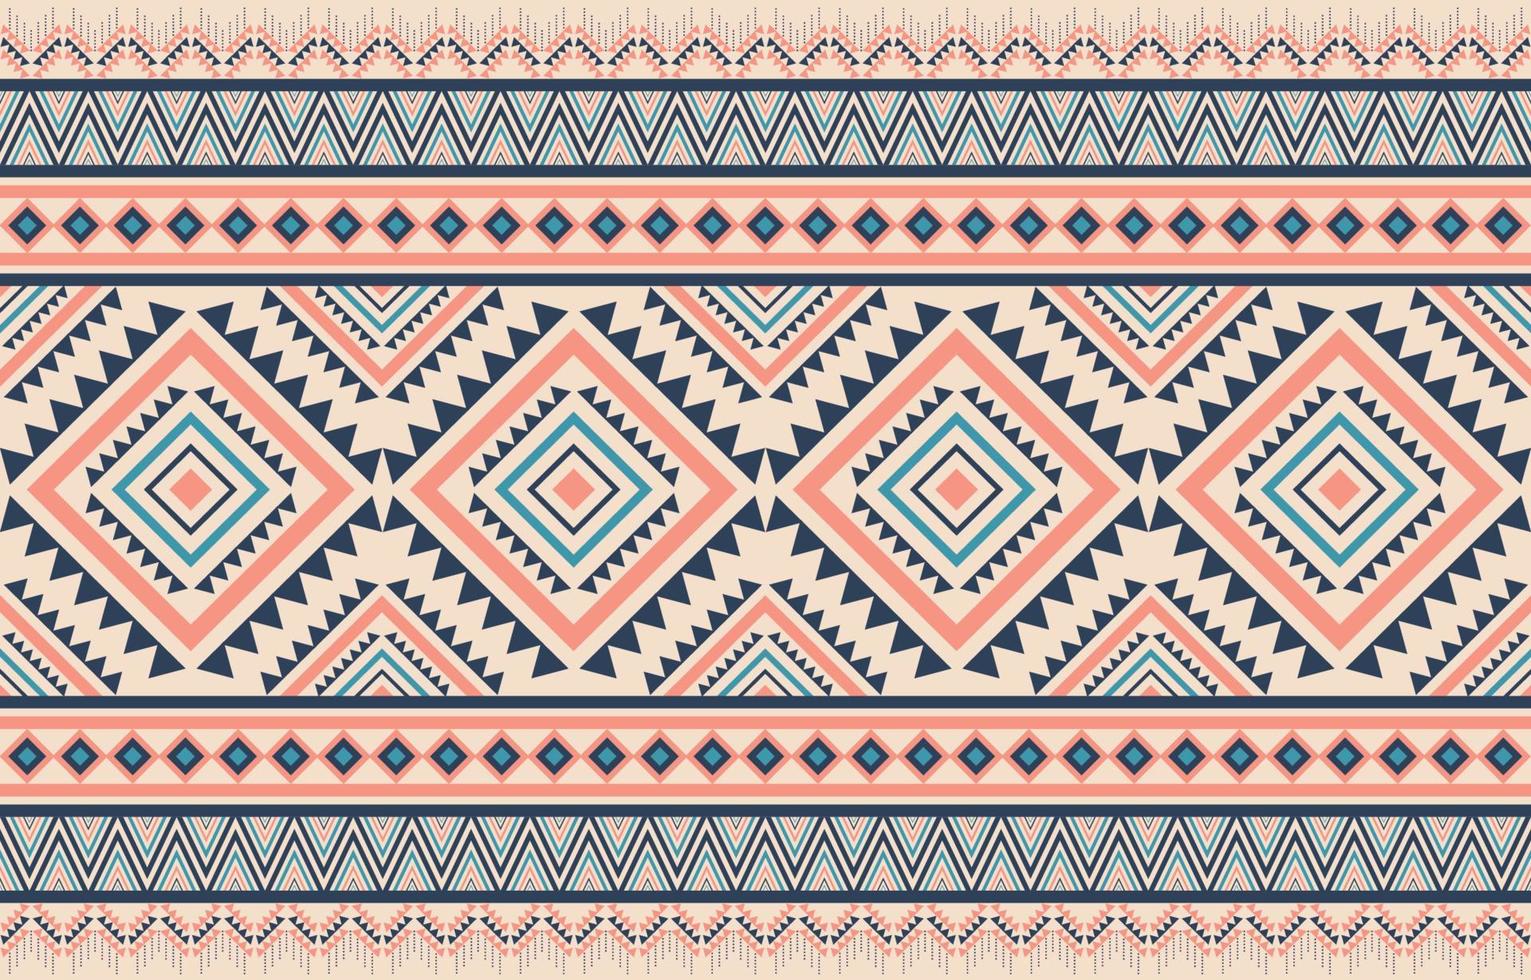 padrão étnico oriental fundo tradicional padrão sem emenda têxteis mexicanos nativos para impressão, tecido, tapete, batik, ilustração vetorial estilo de bordado vetor